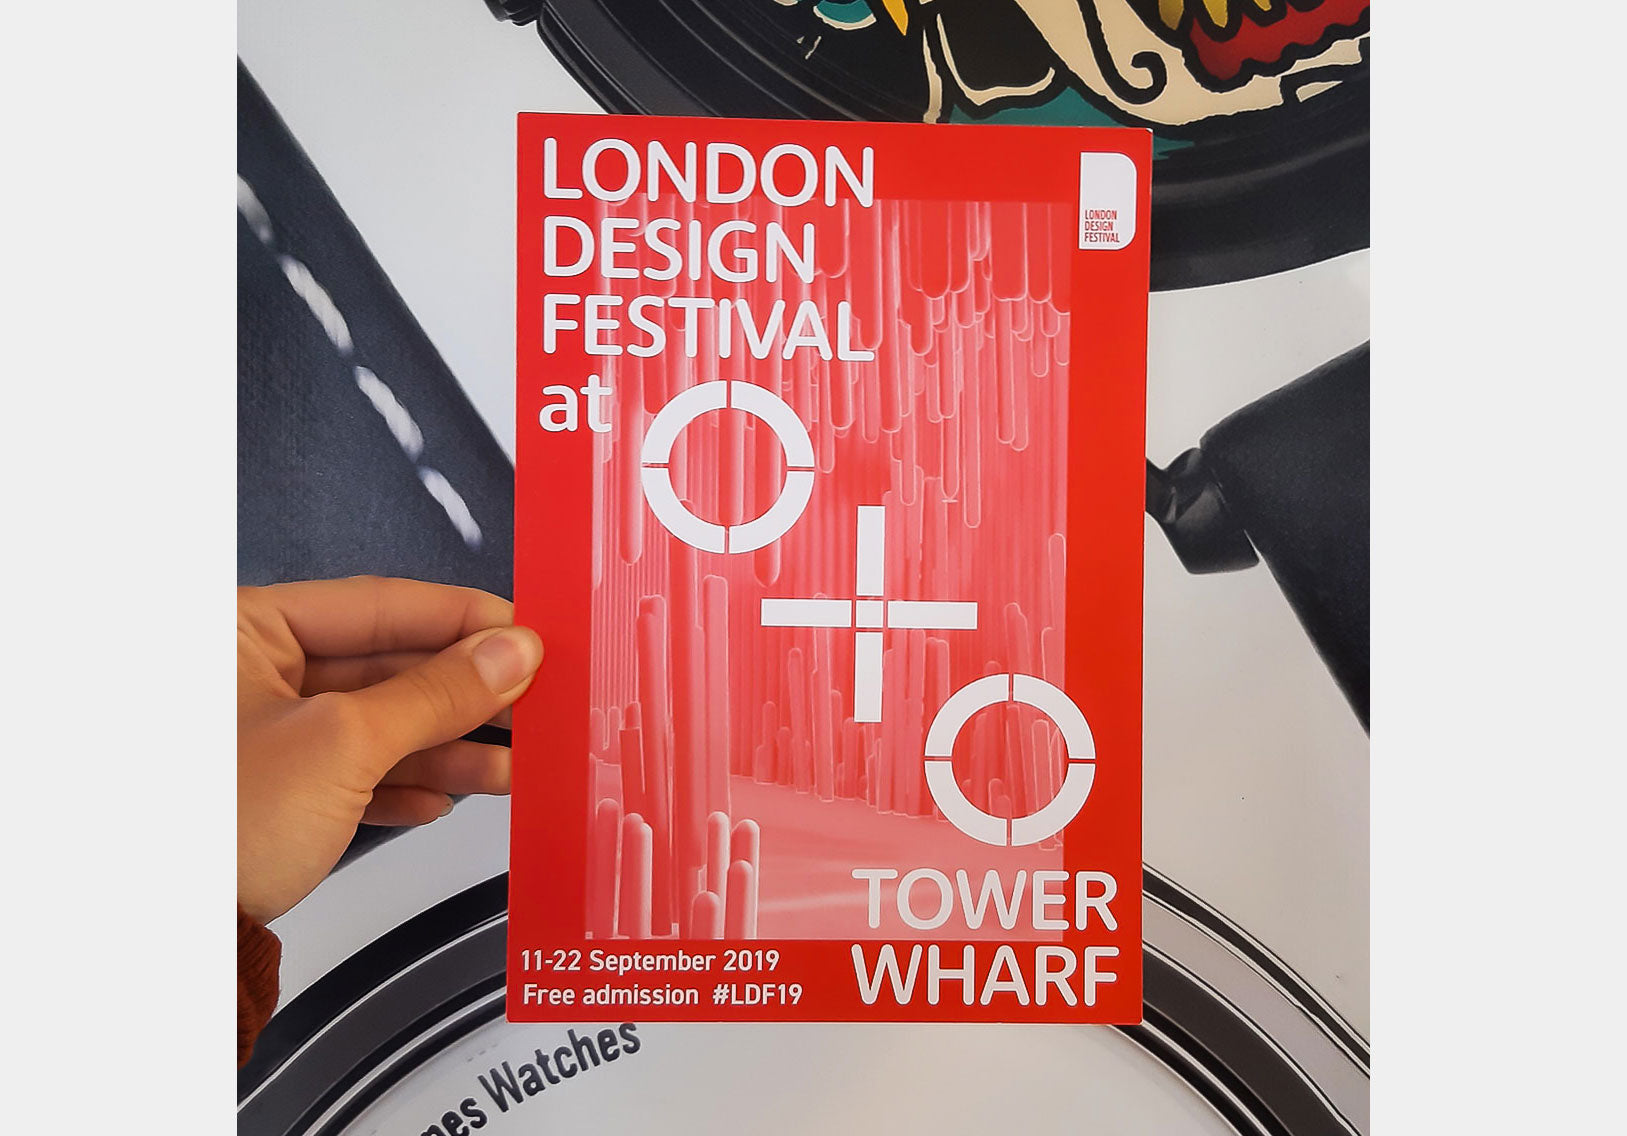 London Design Festival leaflet outside Mr Jones Watches